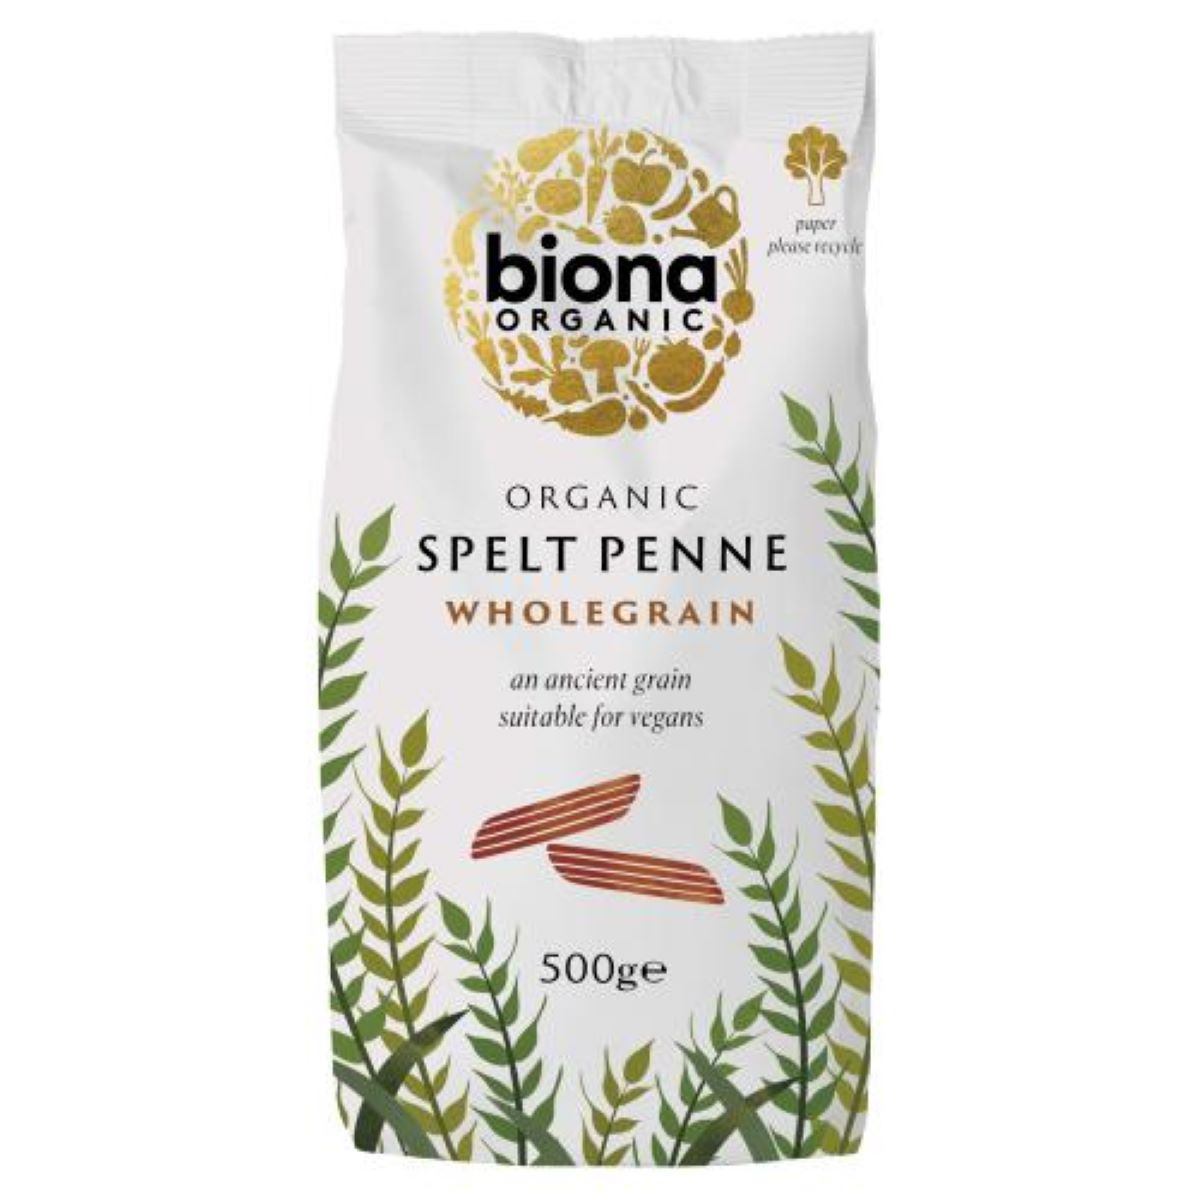 Biona Organic Spelt Penne Wholegrain 500g